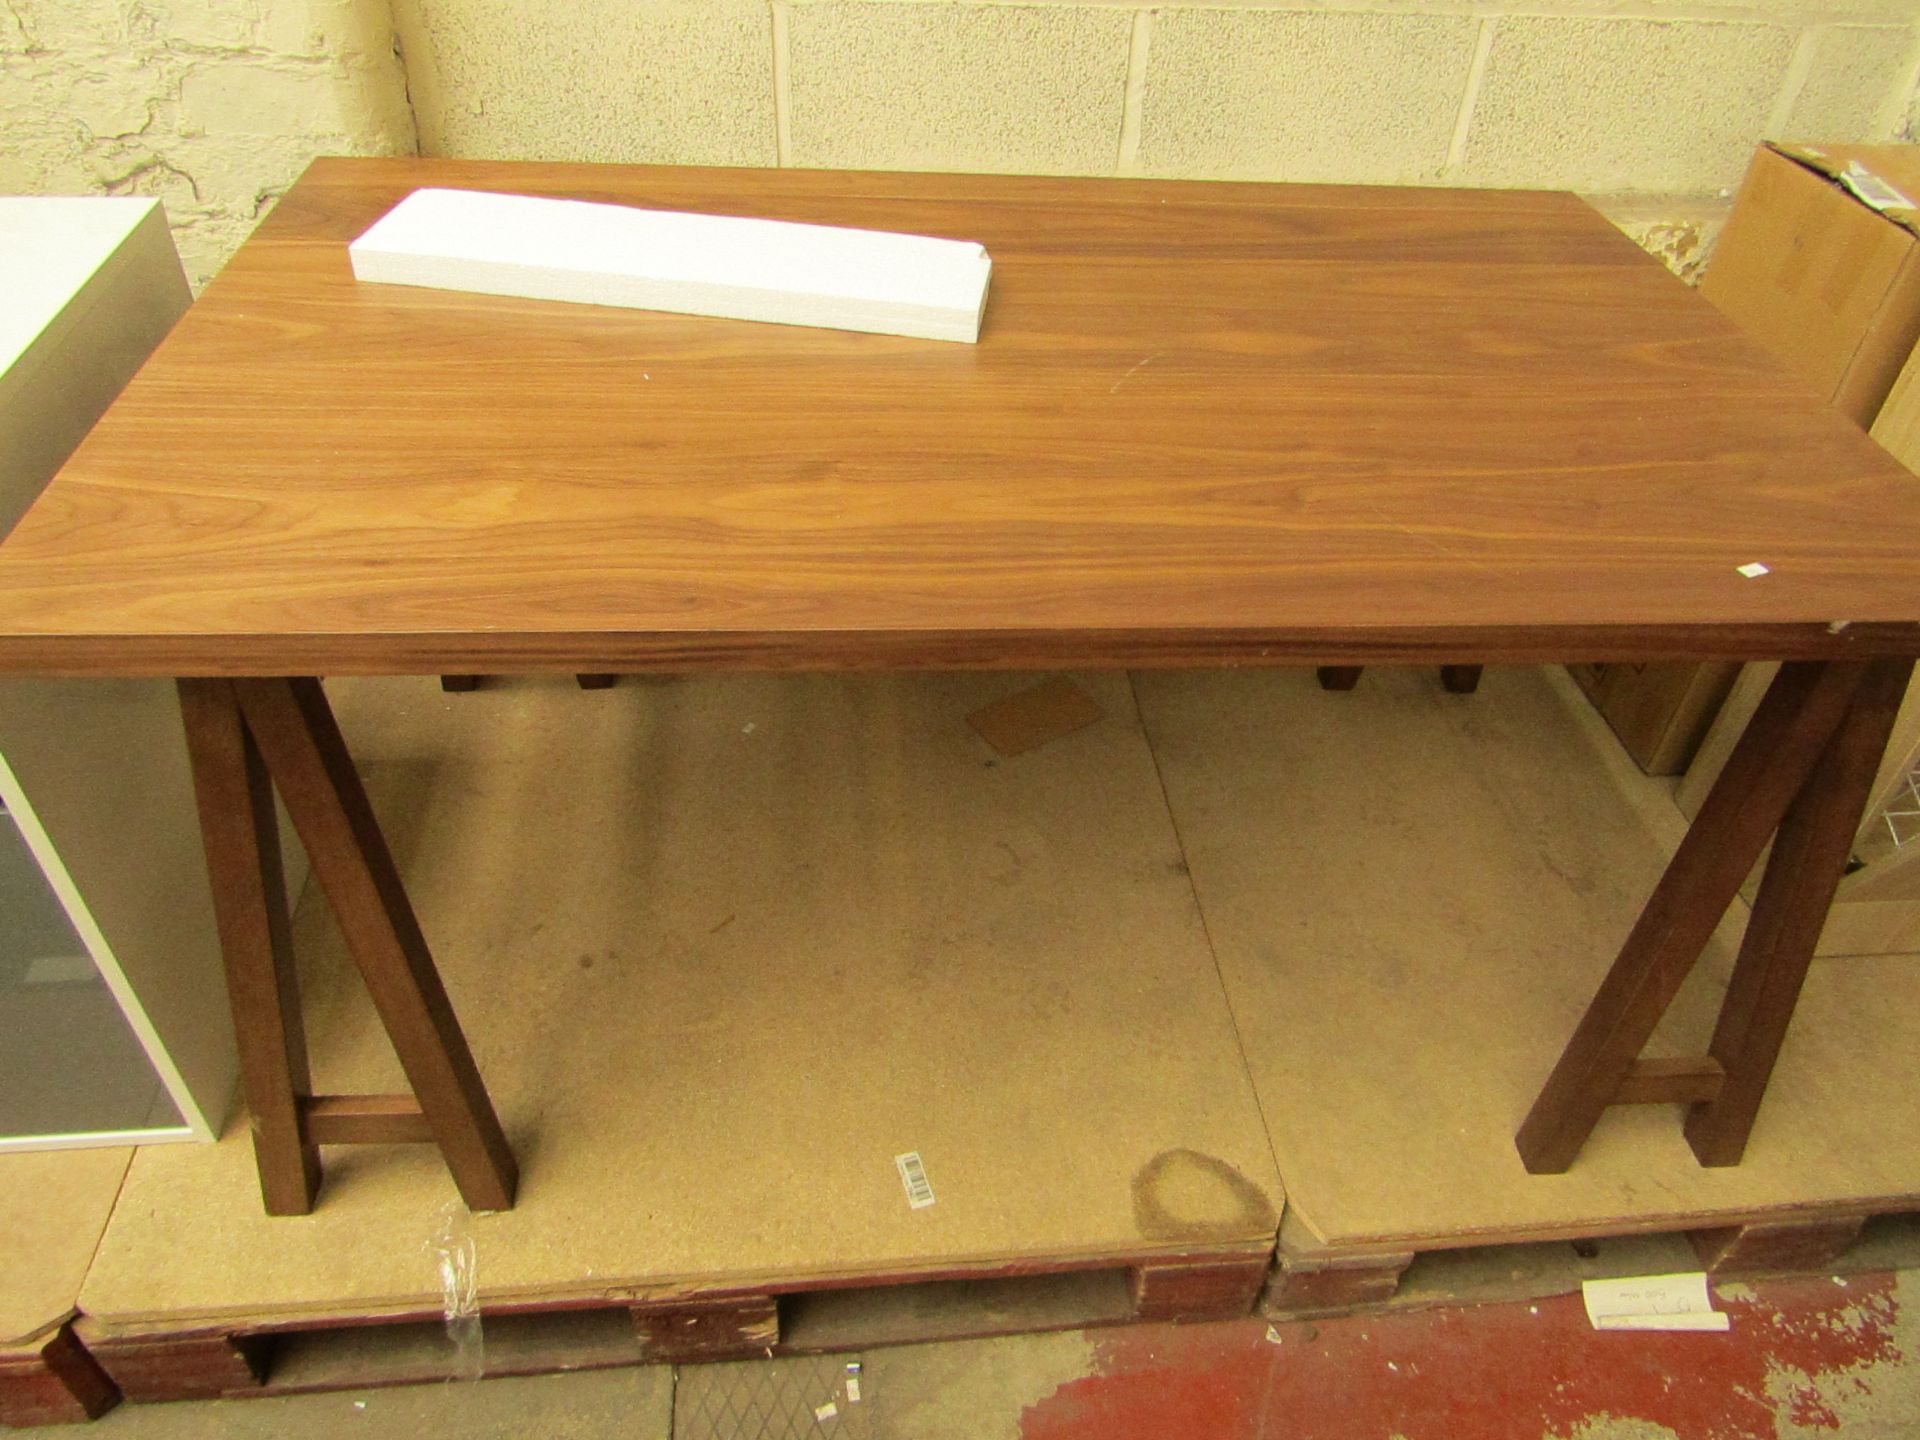 Tressle table/large desk, damaged corner and no screws